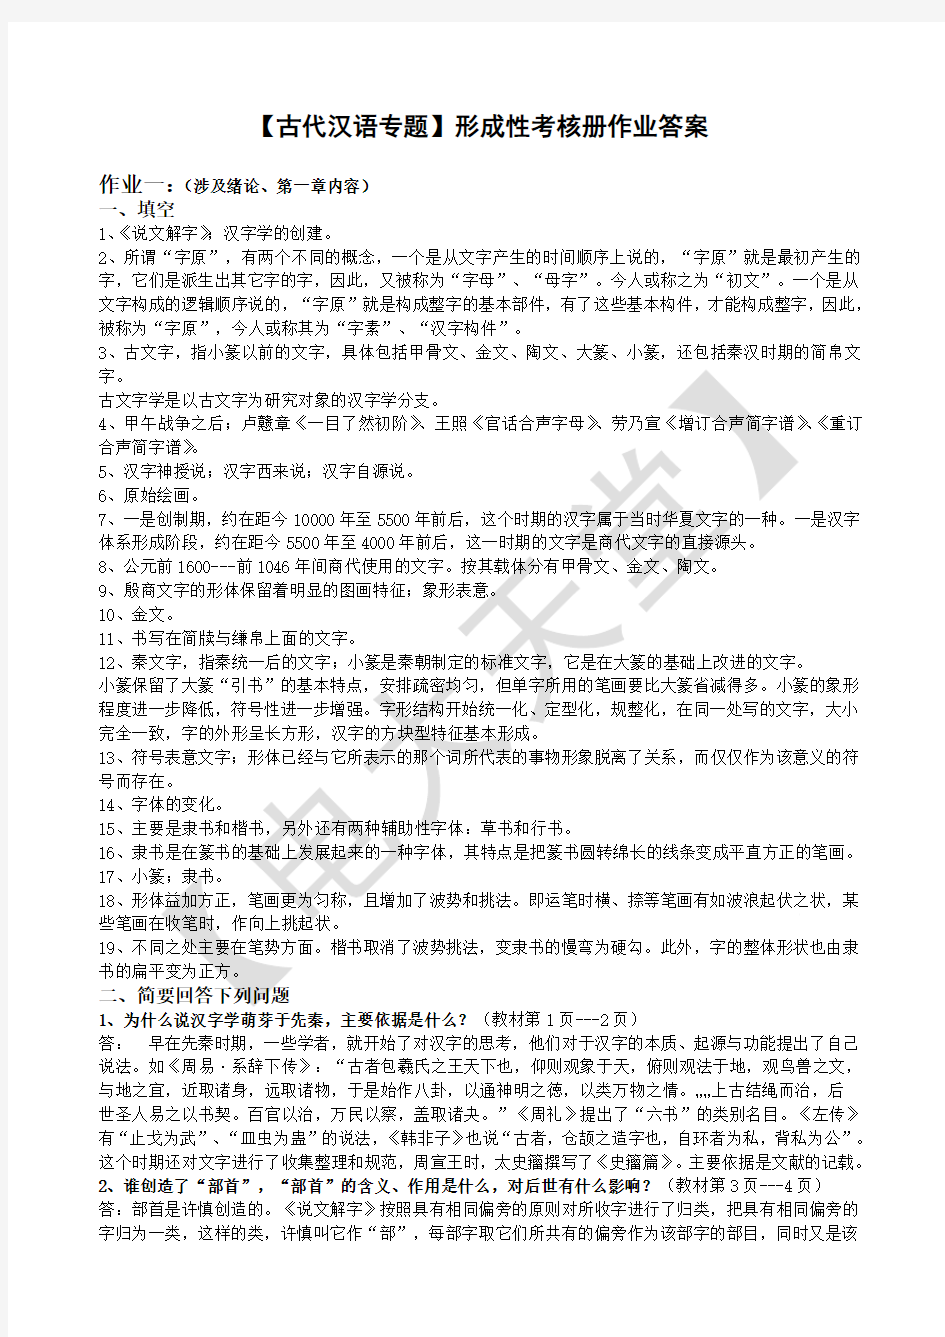 电大-古代汉语-专题形成性考核册作业答案